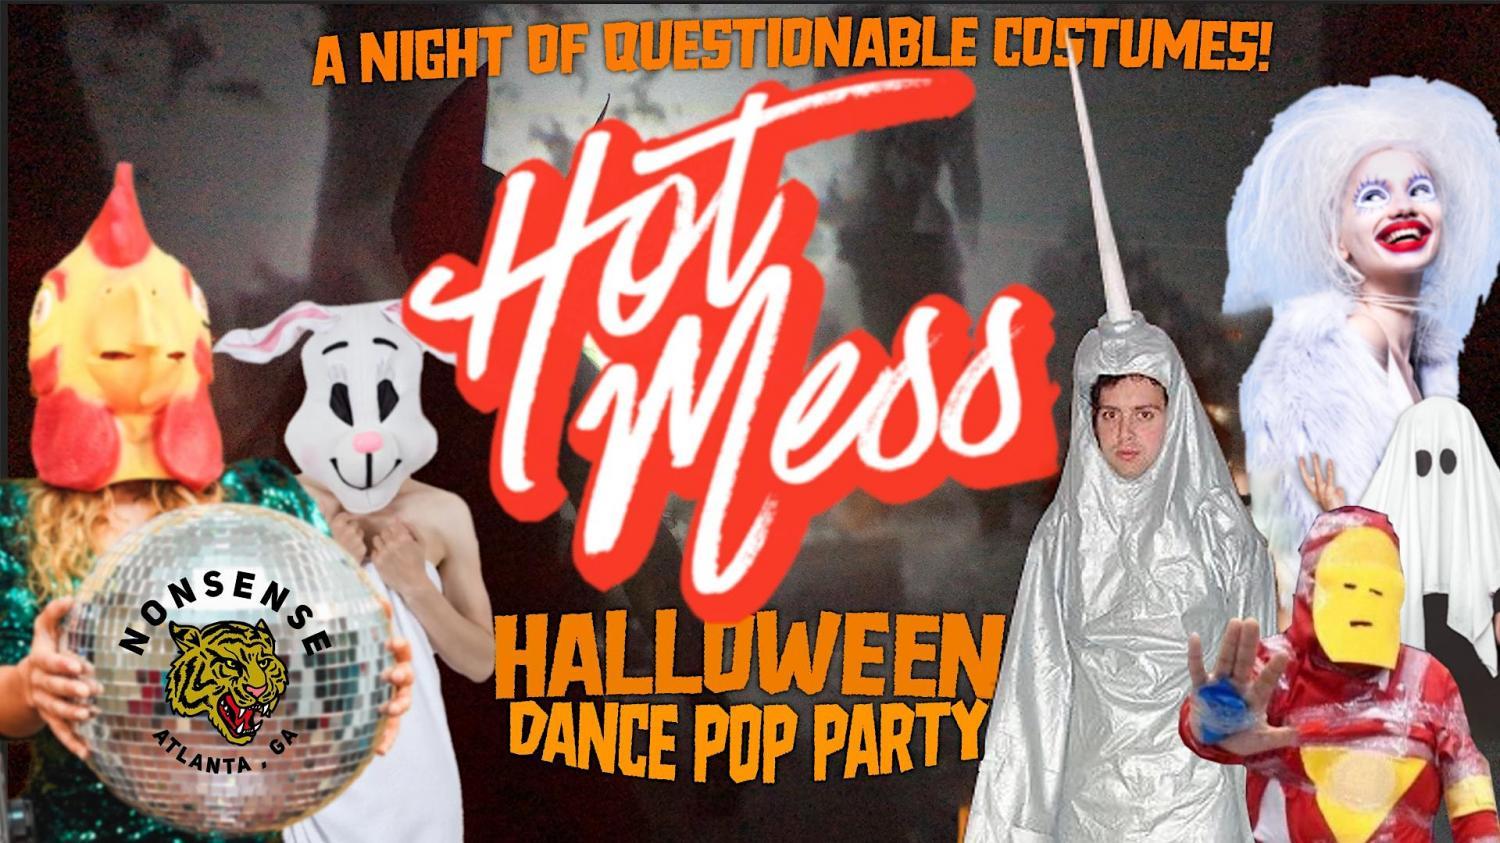 Hot Mess Halloween Dance Pop Party
Fri Oct 21, 10:00 PM - Sat Oct 22, 3:00 AM